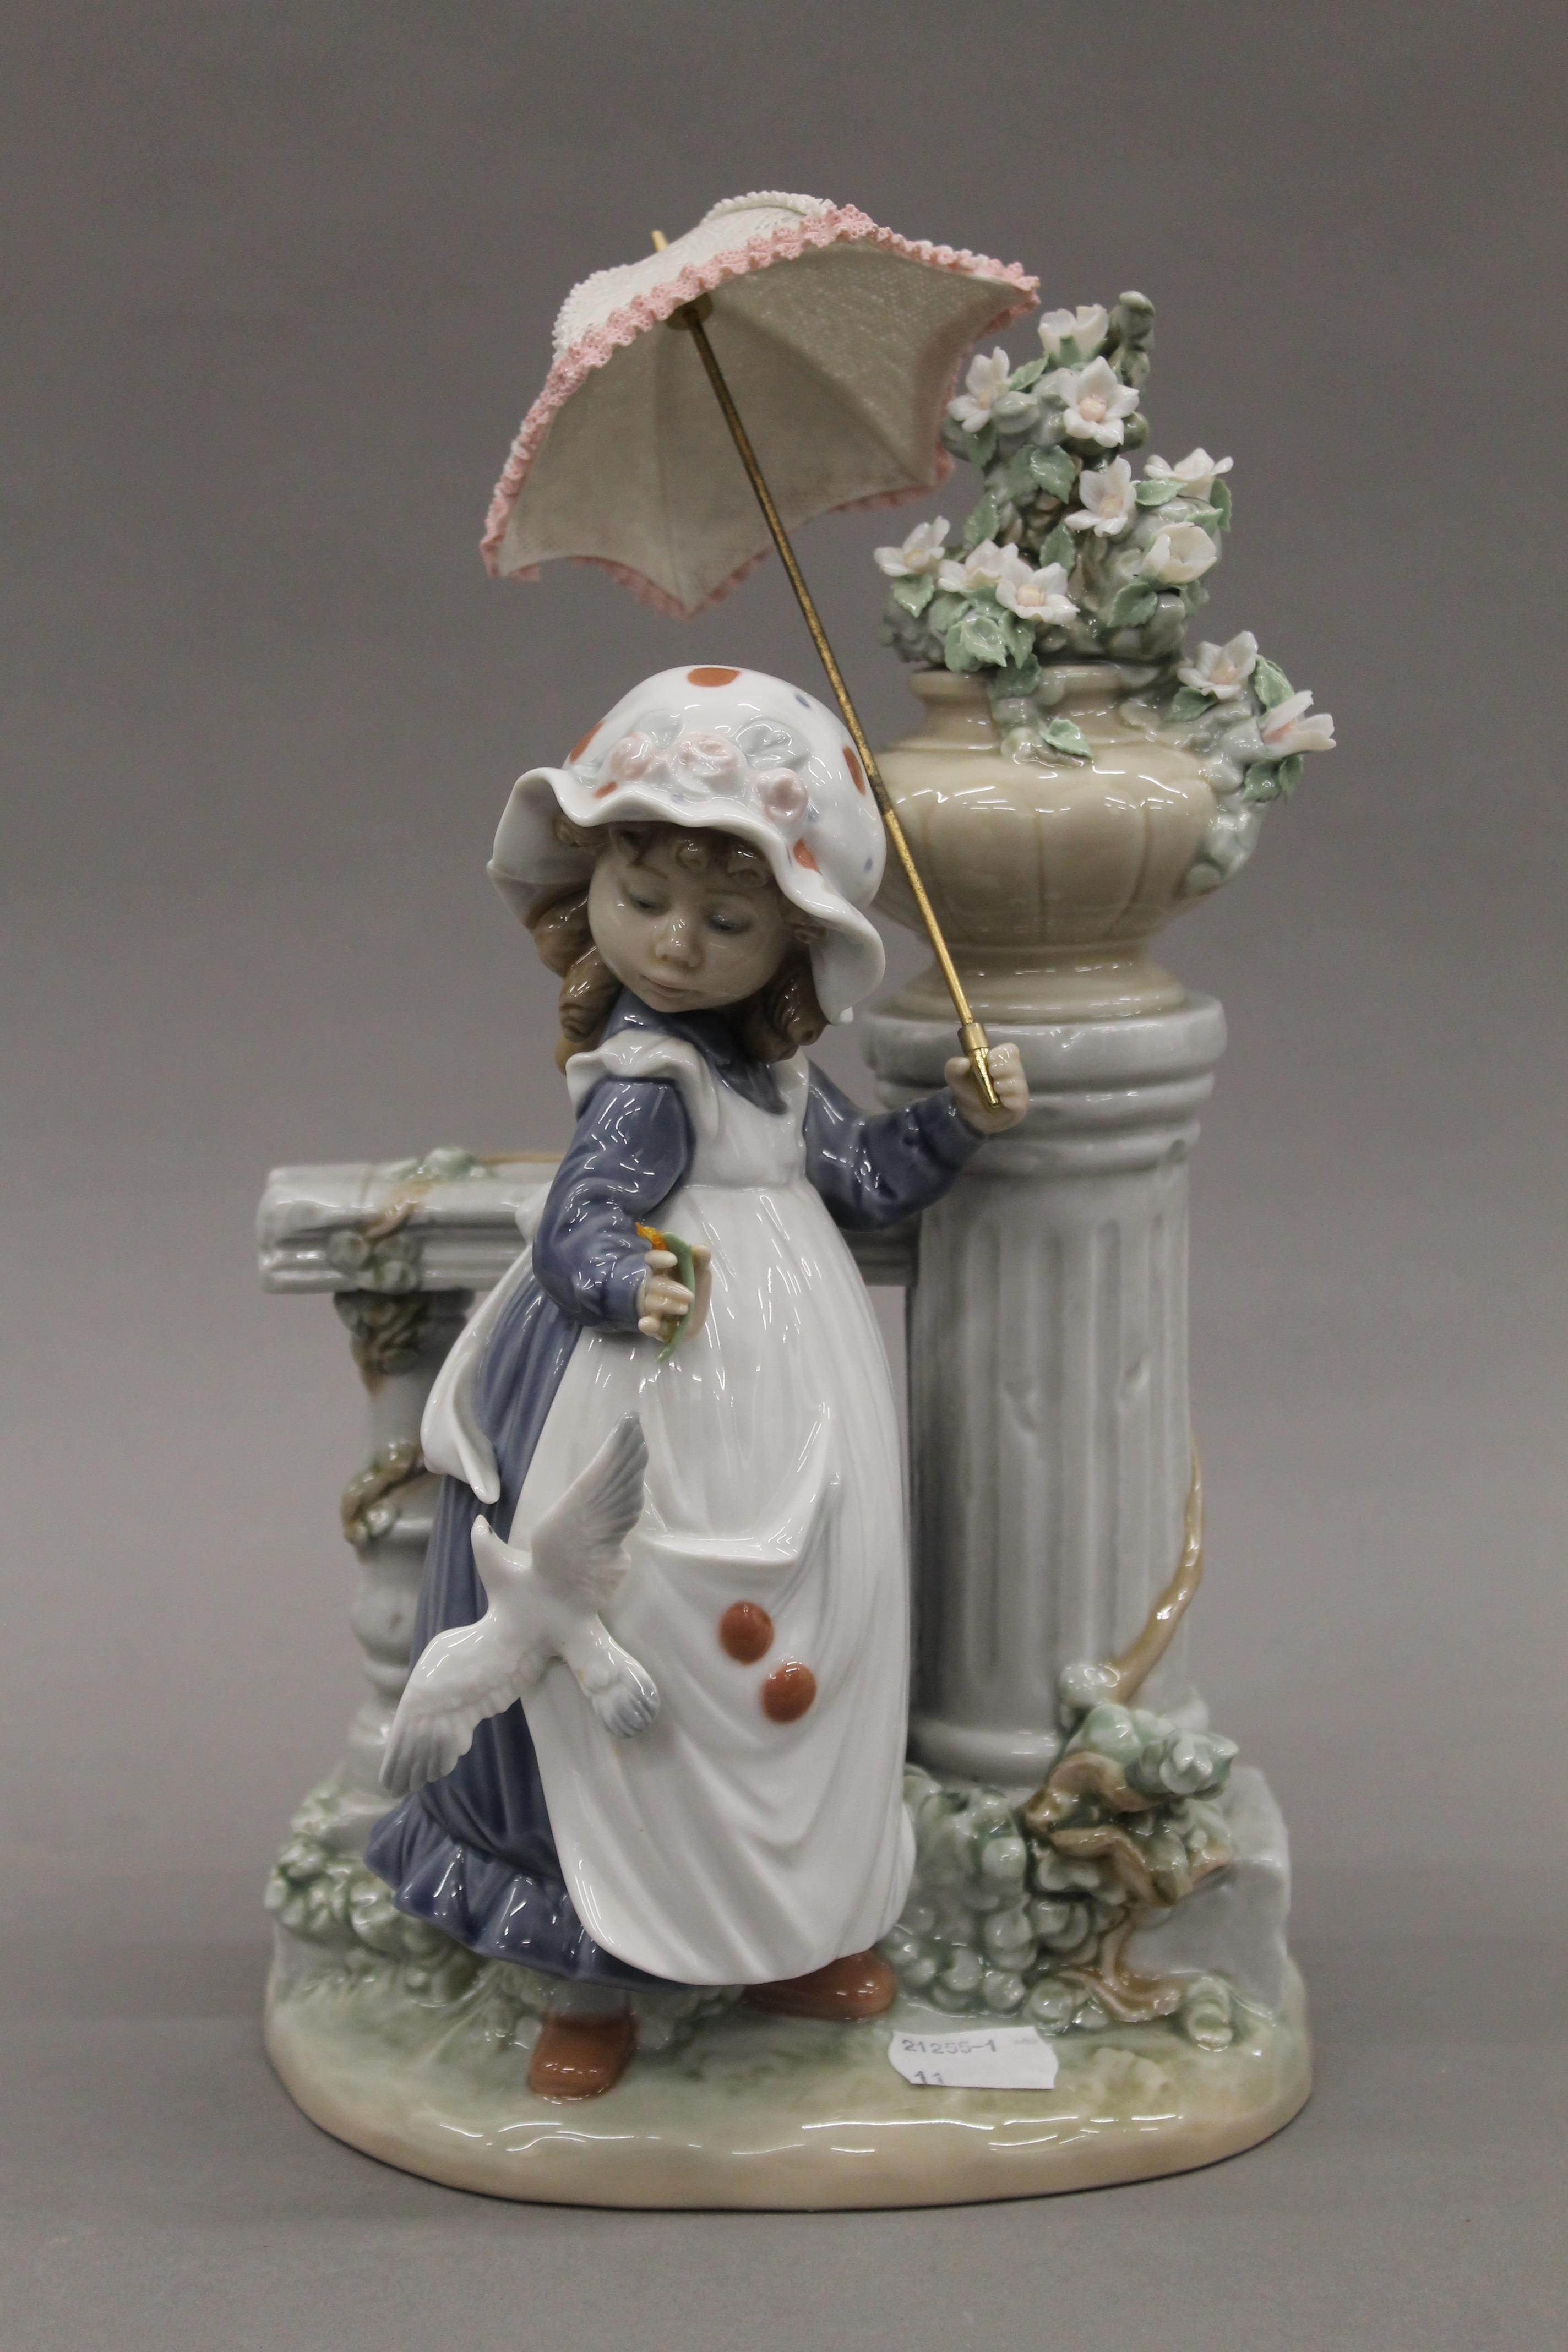 A Lladro figurine. 30 cm high.